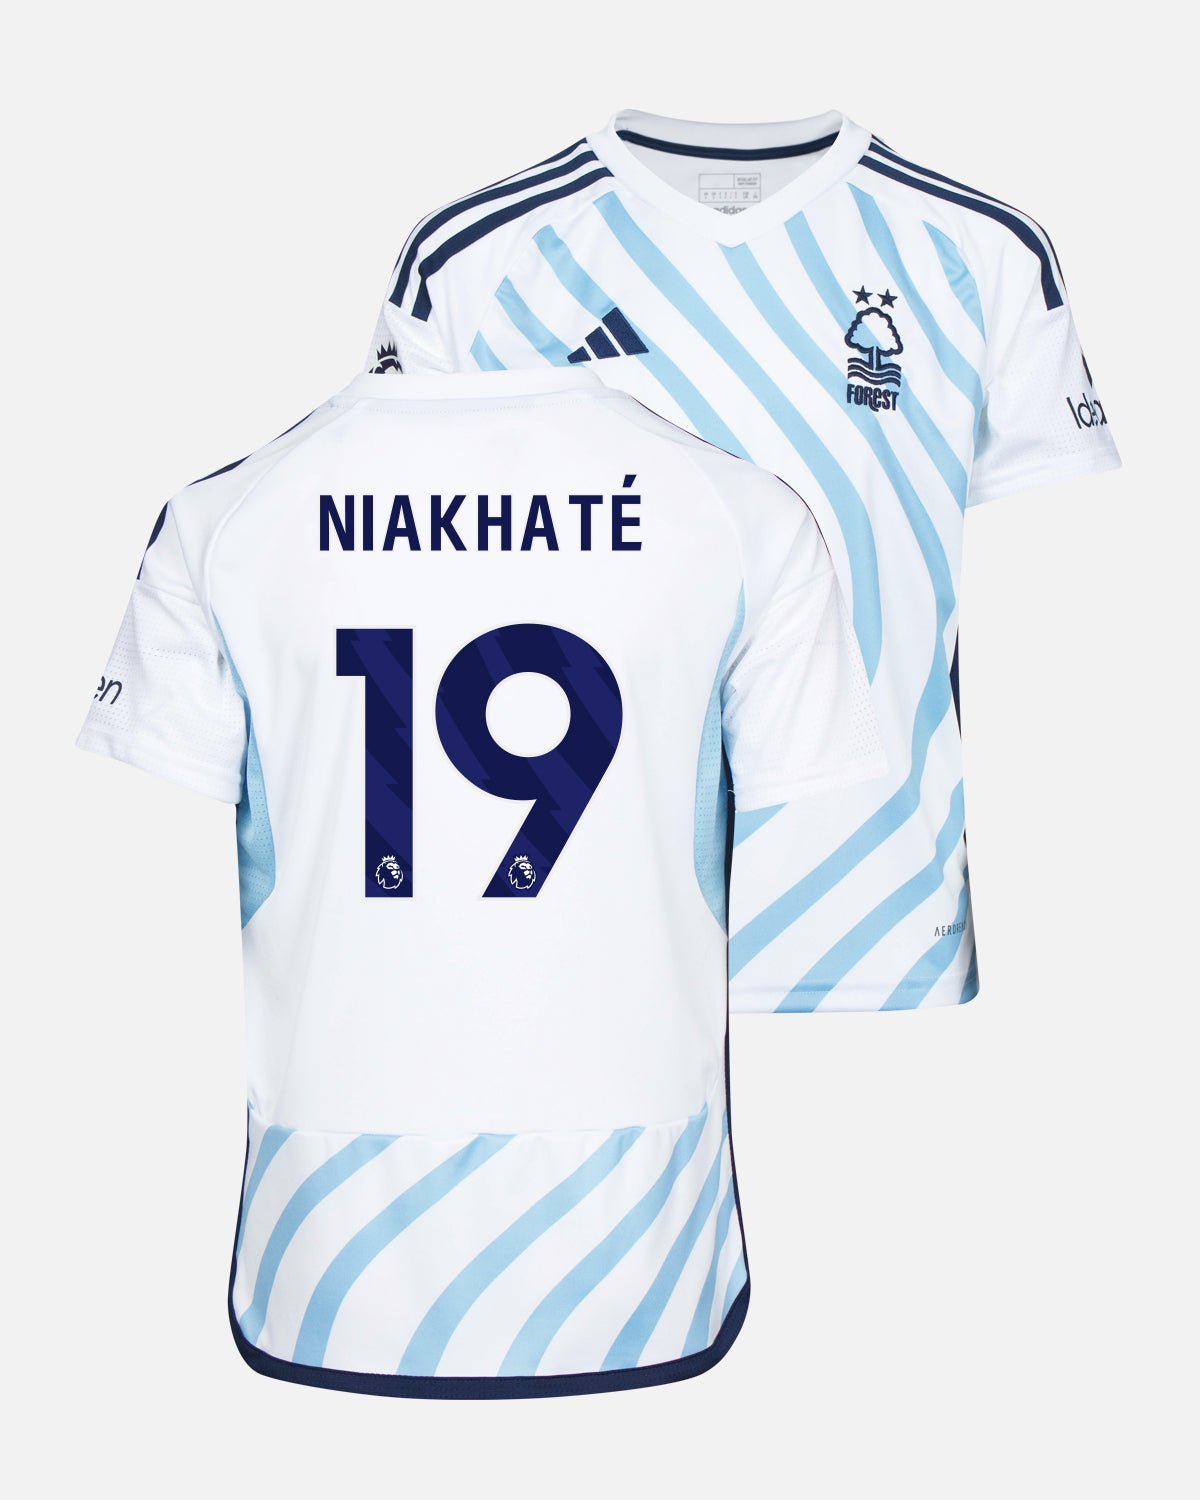 NFFC Junior Away Shirt 23-24 - Niakhaté 19 - Nottingham Forest FC